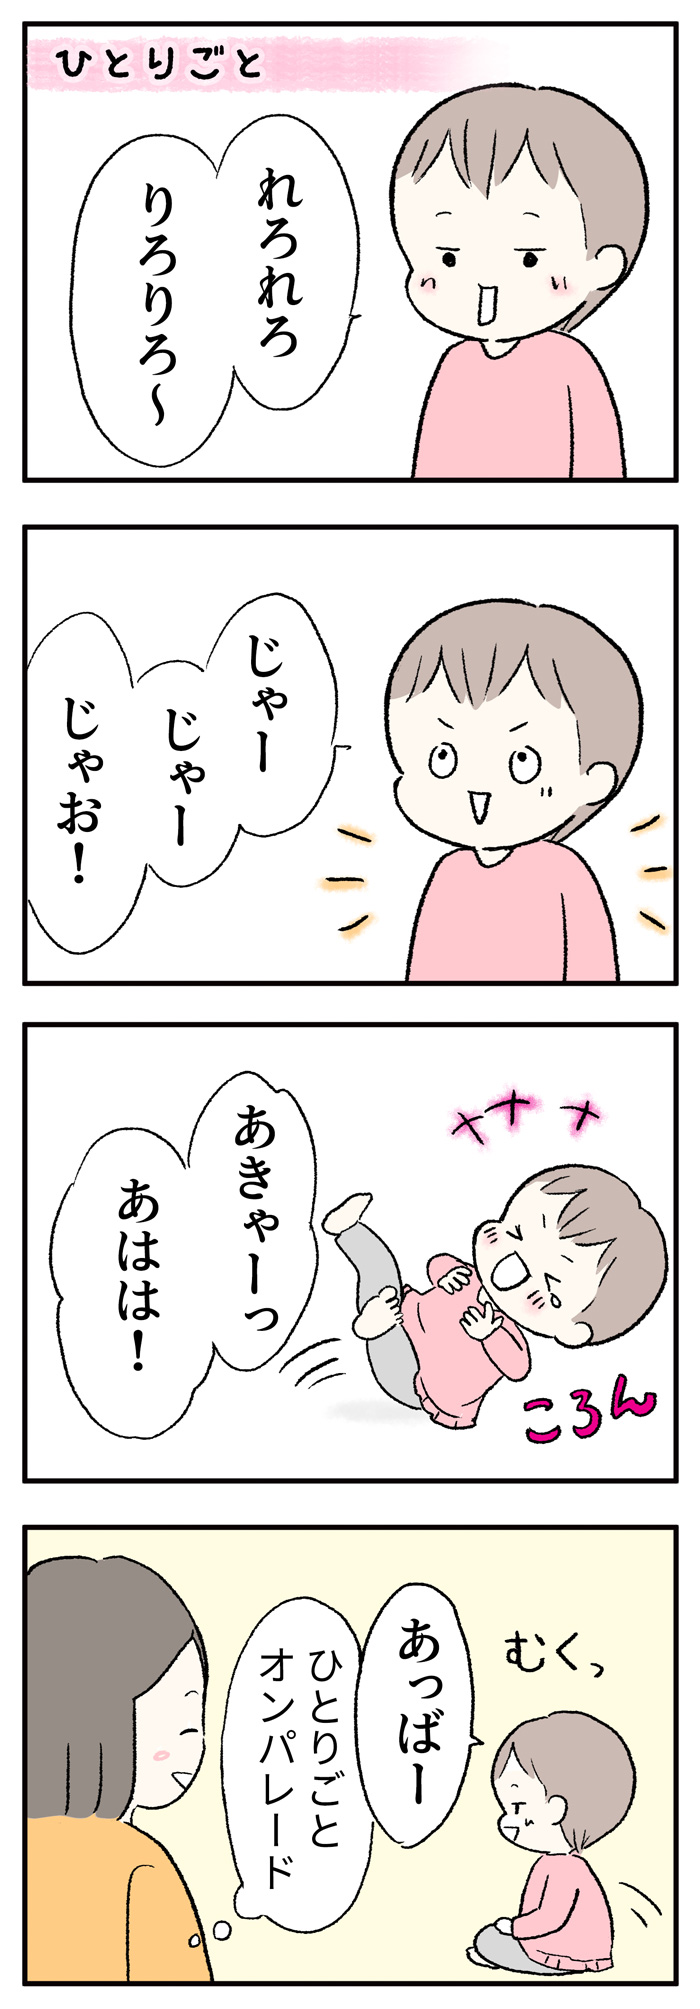 【育児漫画】1歳6ヶ月